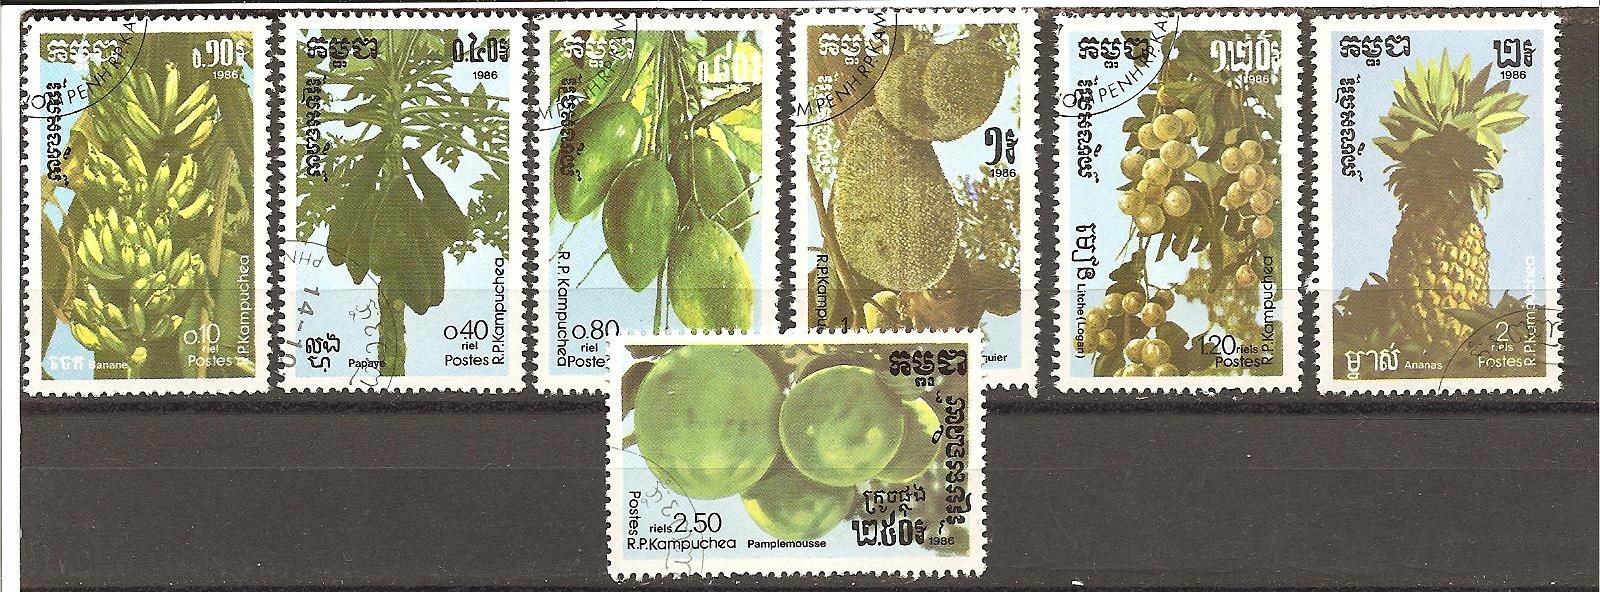 22961 - Cambogia - serie completa usata: Frutti tropicali